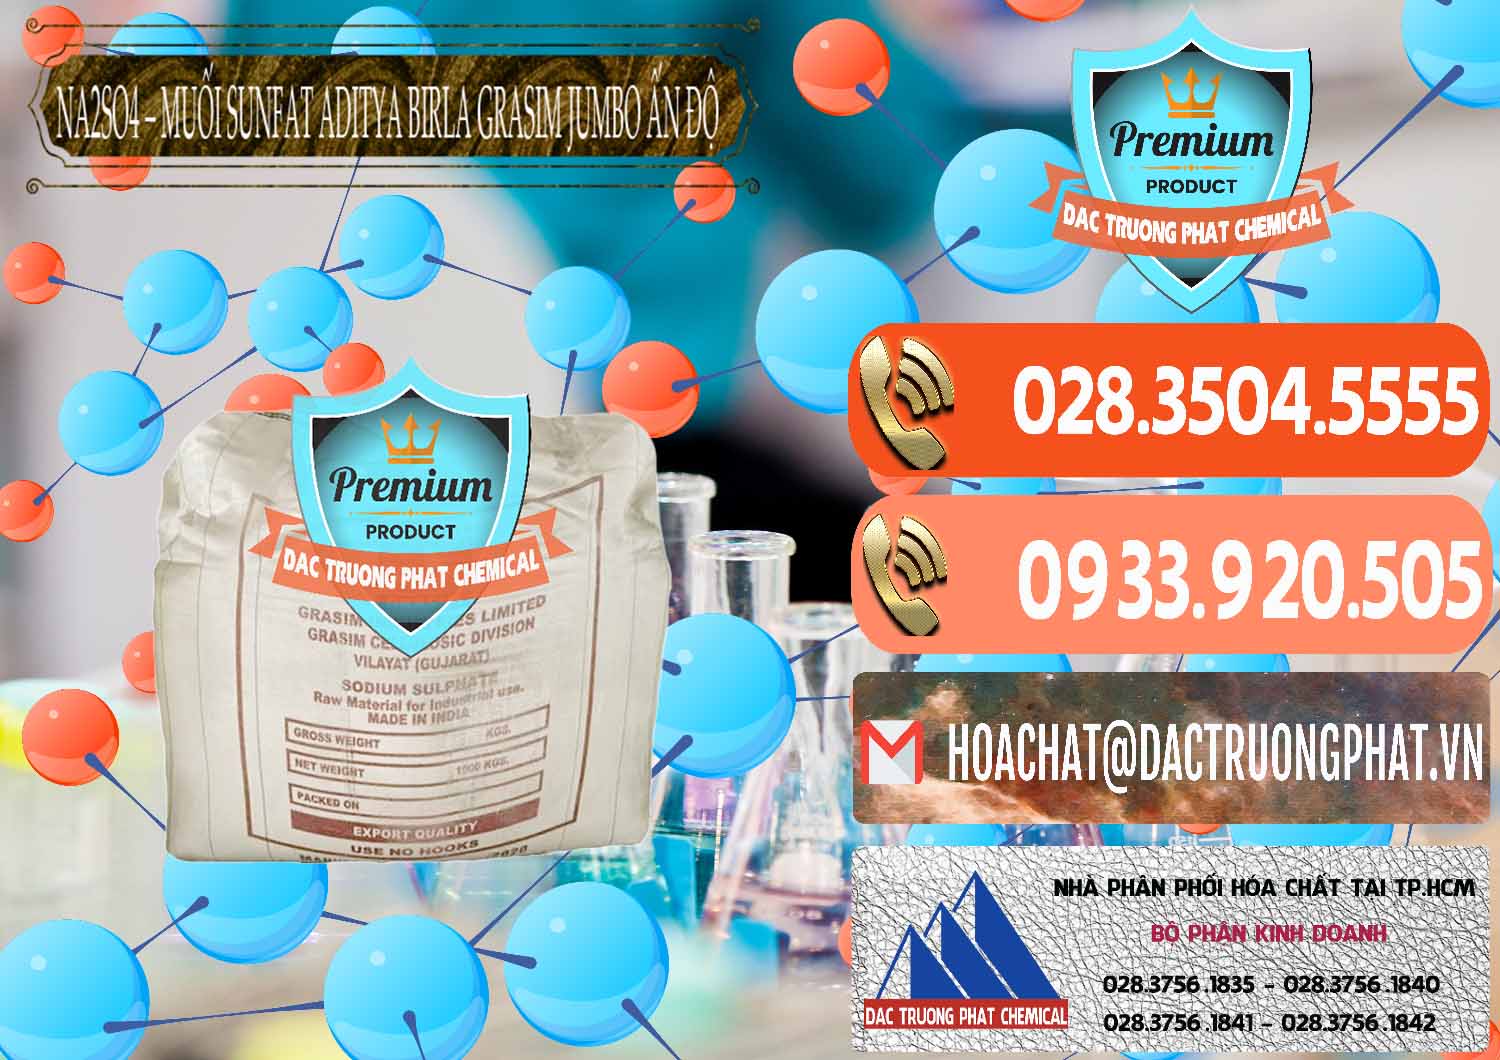 Đơn vị bán _ cung cấp Sodium Sulphate - Muối Sunfat Na2SO4 Jumbo Bành Aditya Birla Grasim Ấn Độ India - 0357 - Bán & cung cấp hóa chất tại TP.HCM - hoachatmientay.com